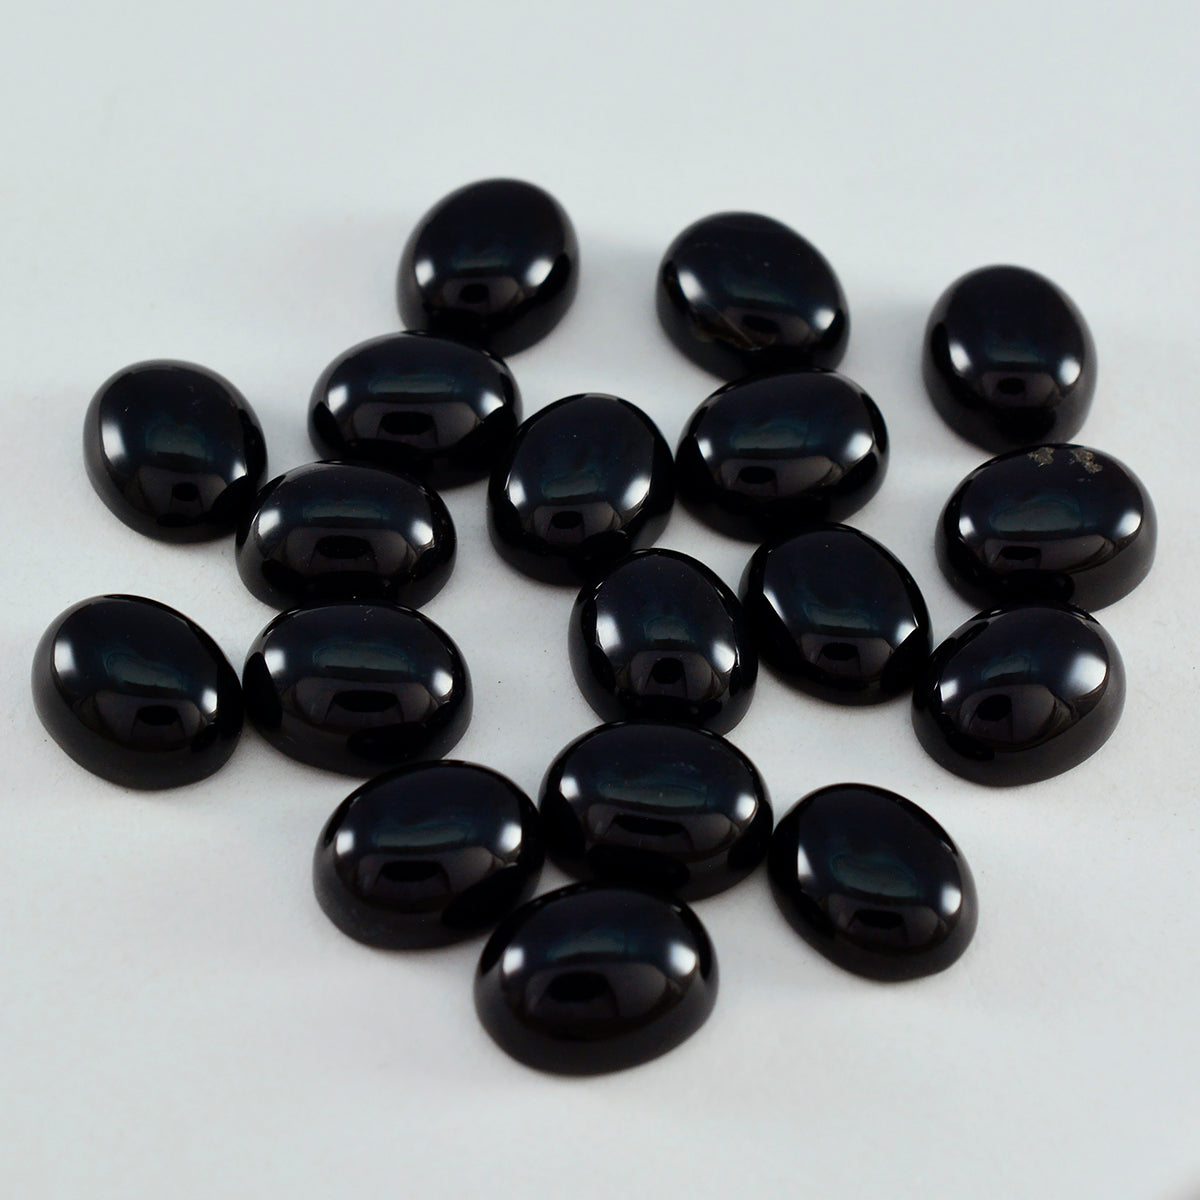 Riyogems 1PC Black Onyx Cabochon 6x8 mm ovale vorm uitstekende kwaliteit edelsteen